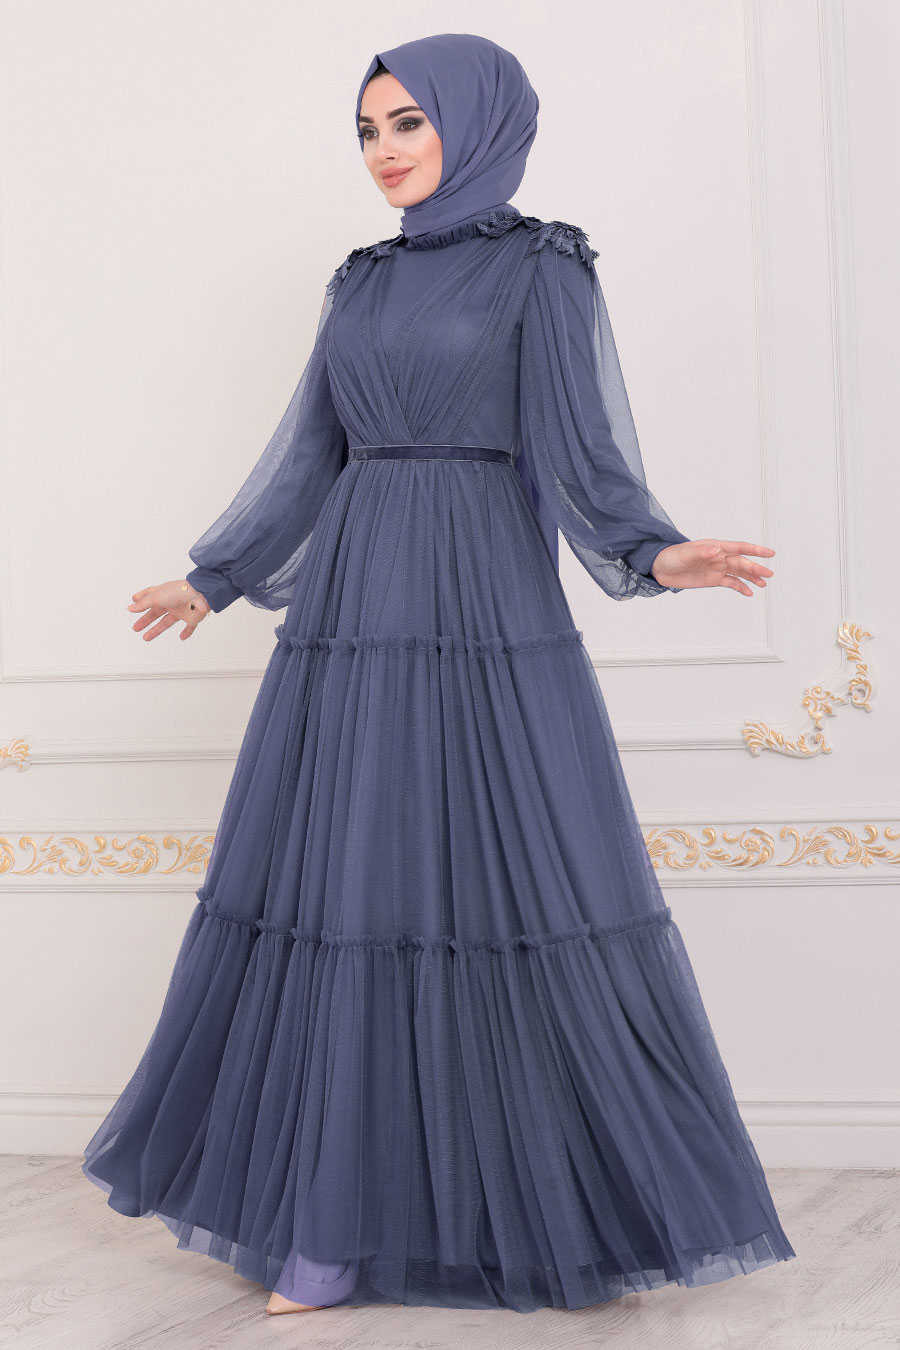 İndigo Blue Hijab Evening Dress 4072IM - Neva-style.com